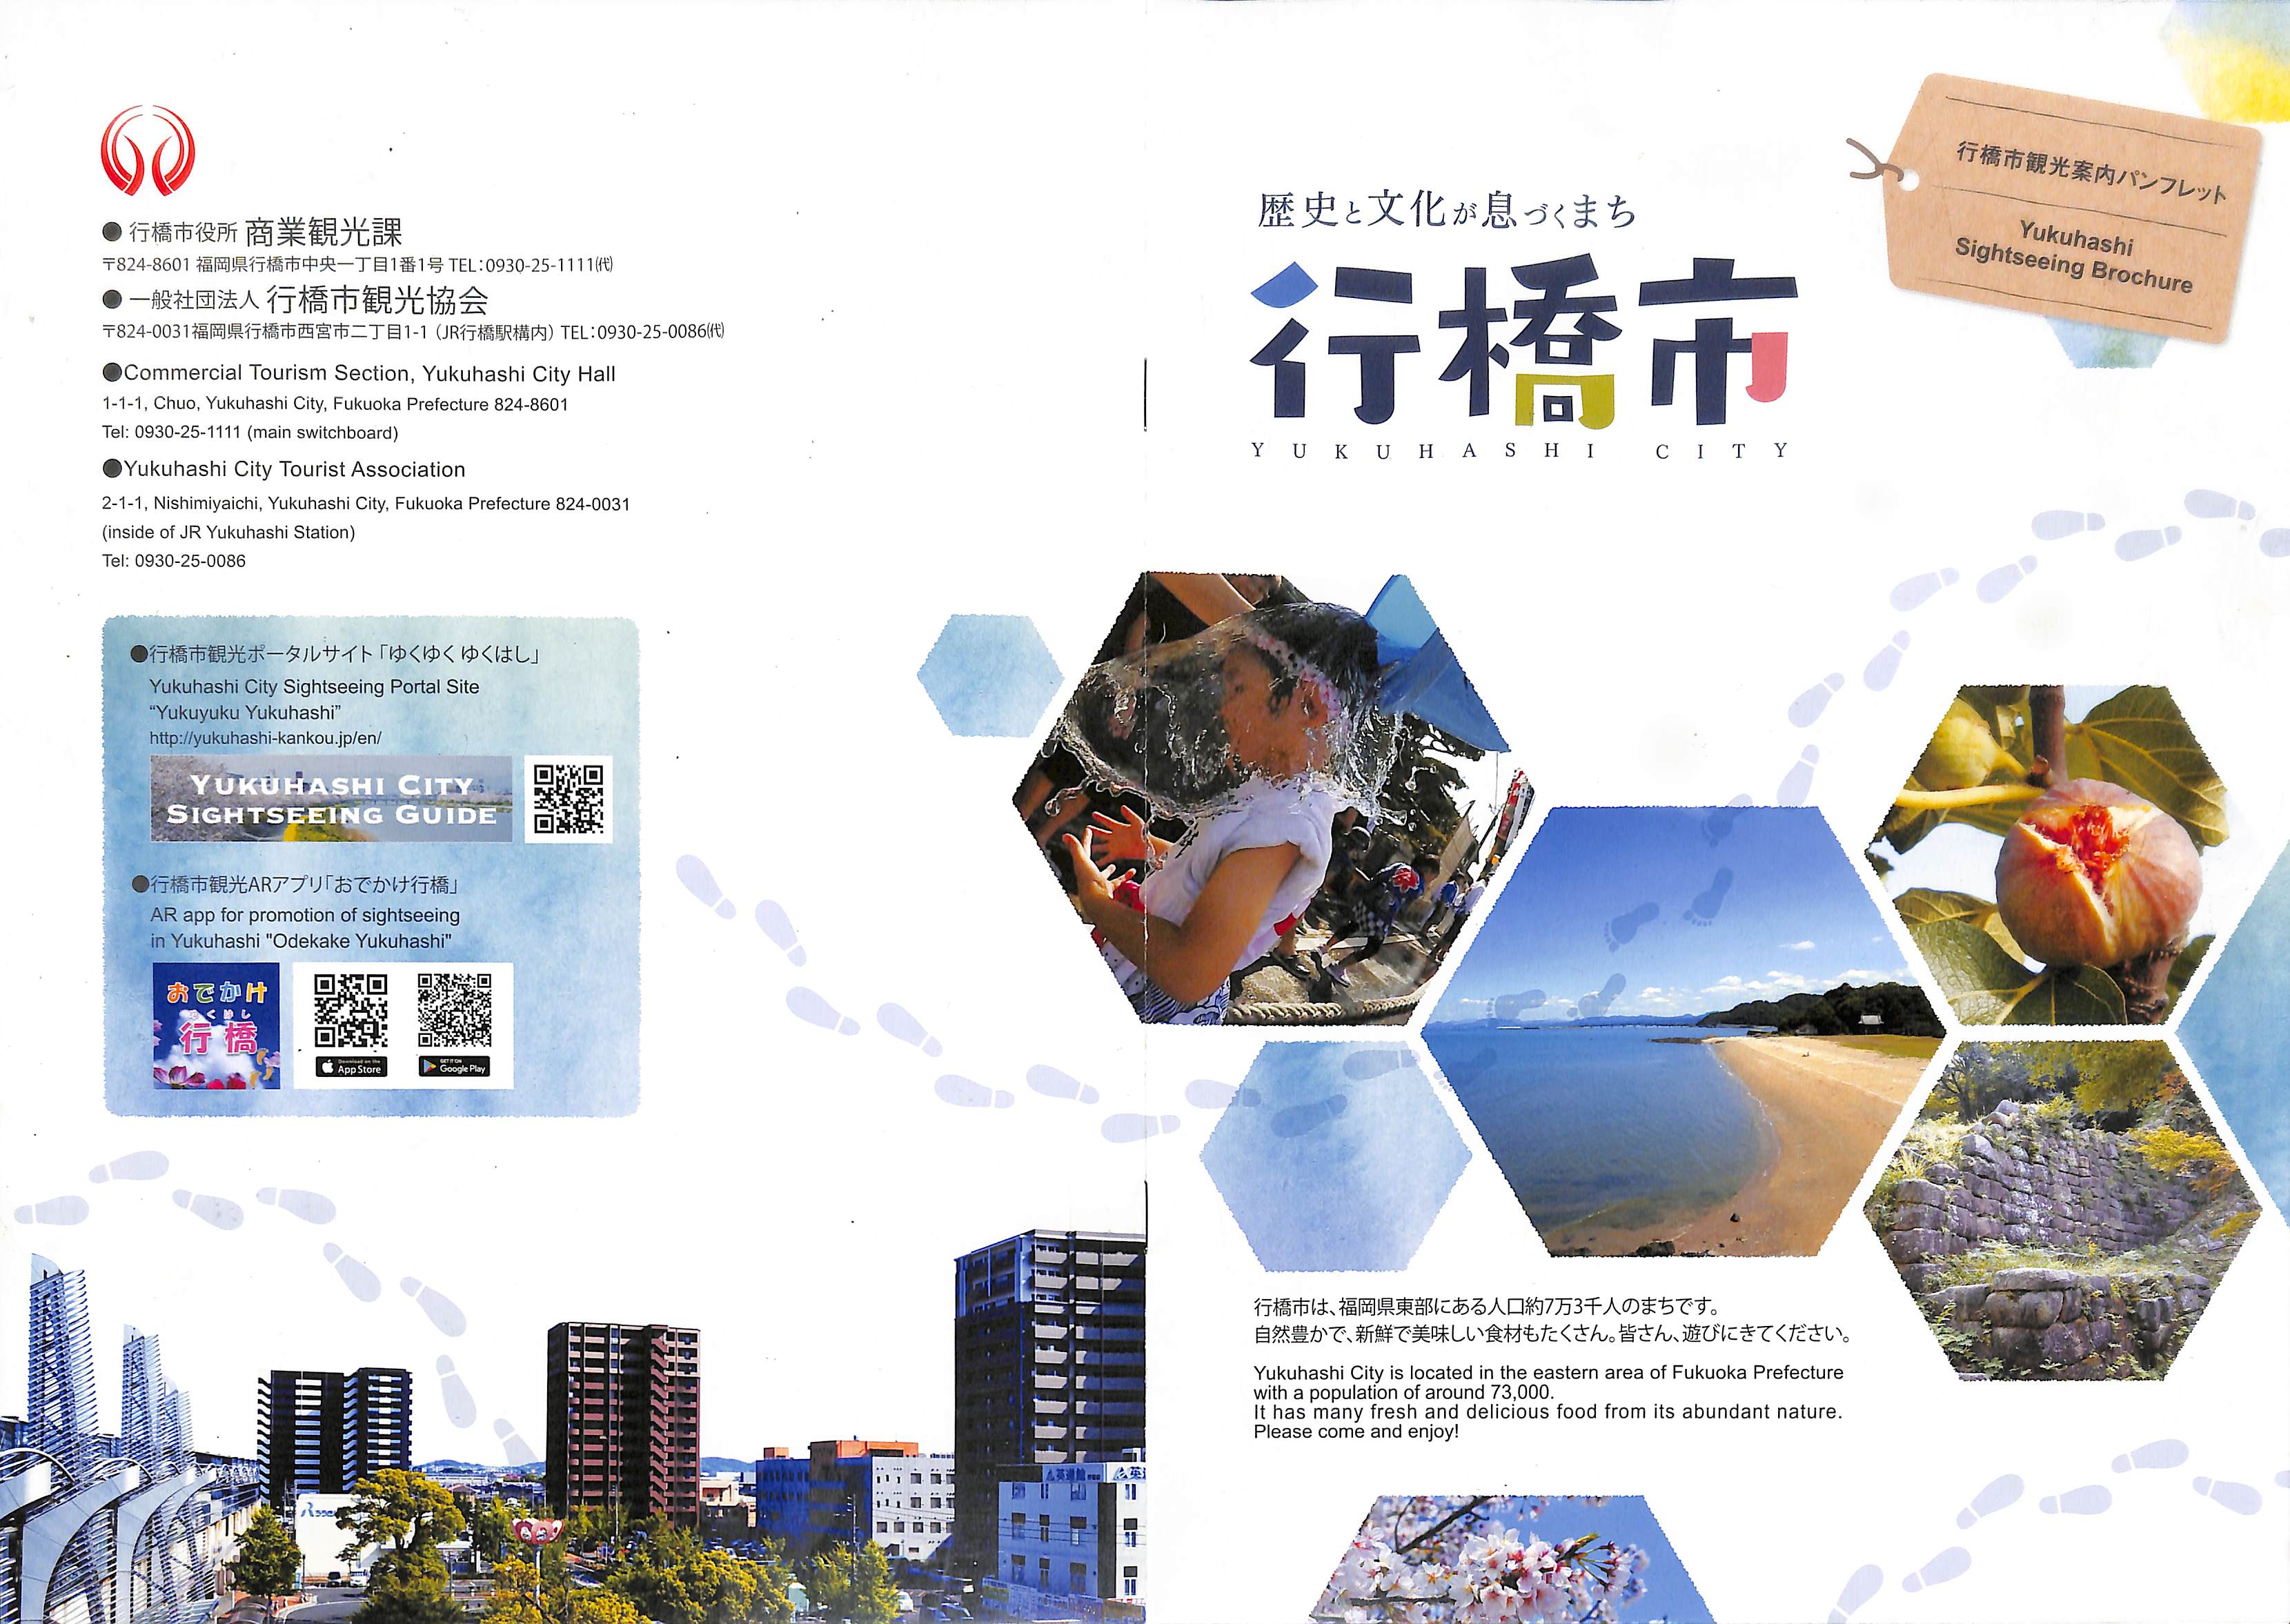 Yukuhashi Sightseeing Brochure